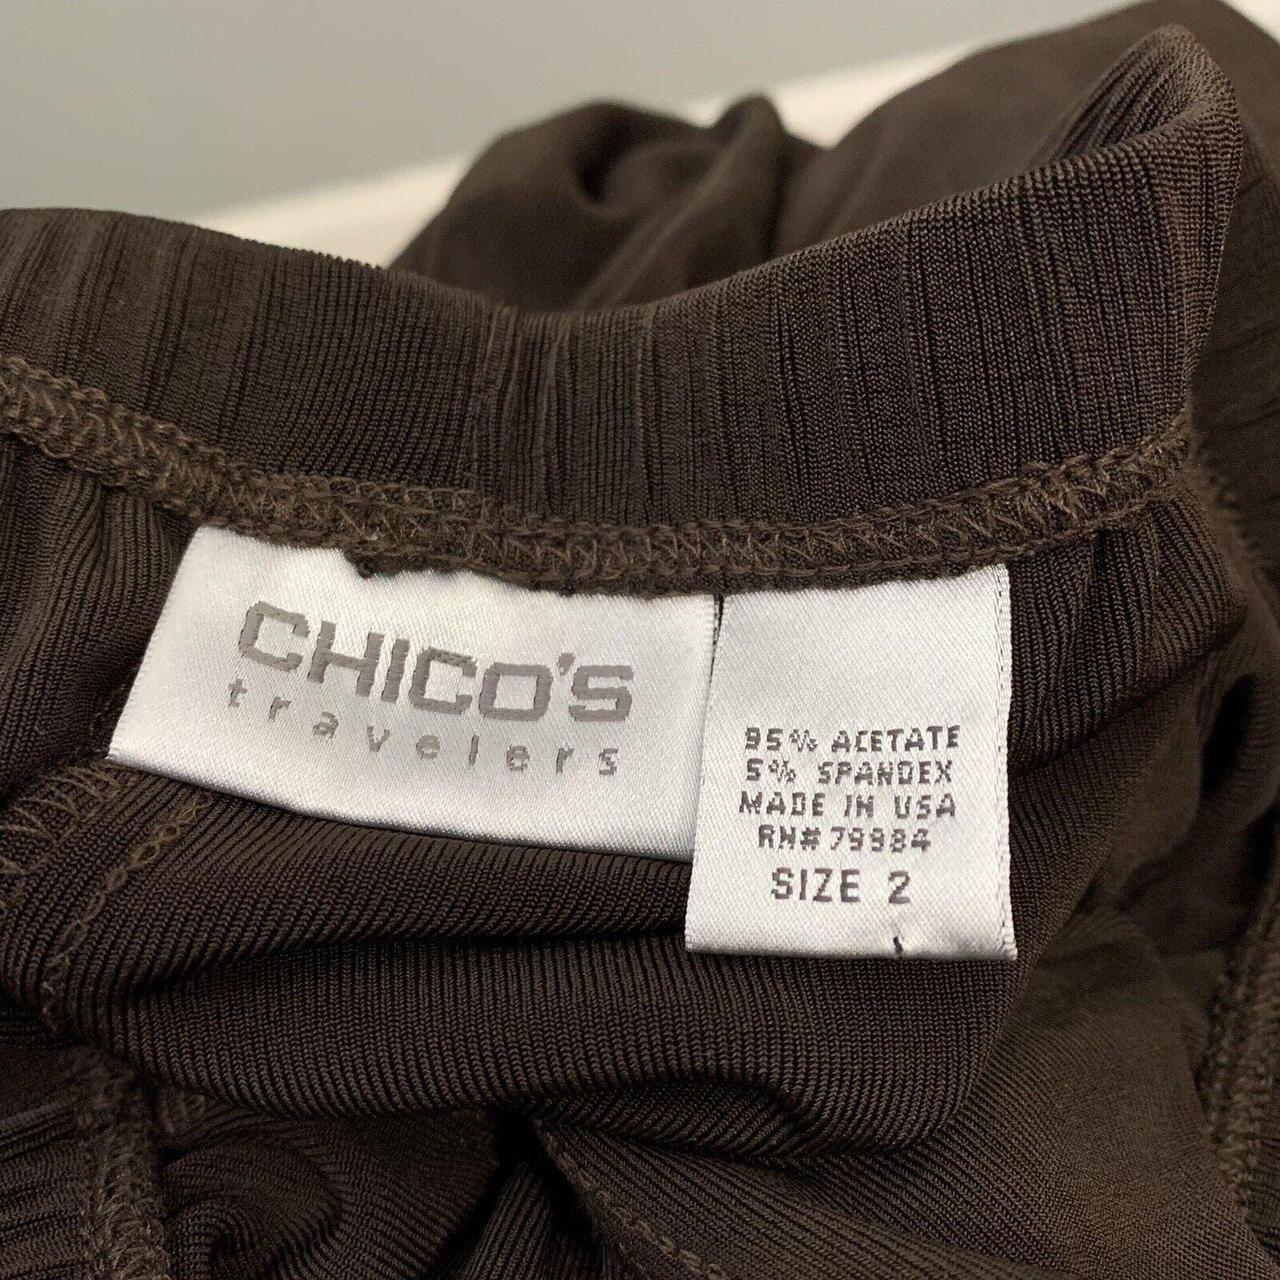 CHICO'S TRAVELERS wrinkle free brown pull on pants - Depop